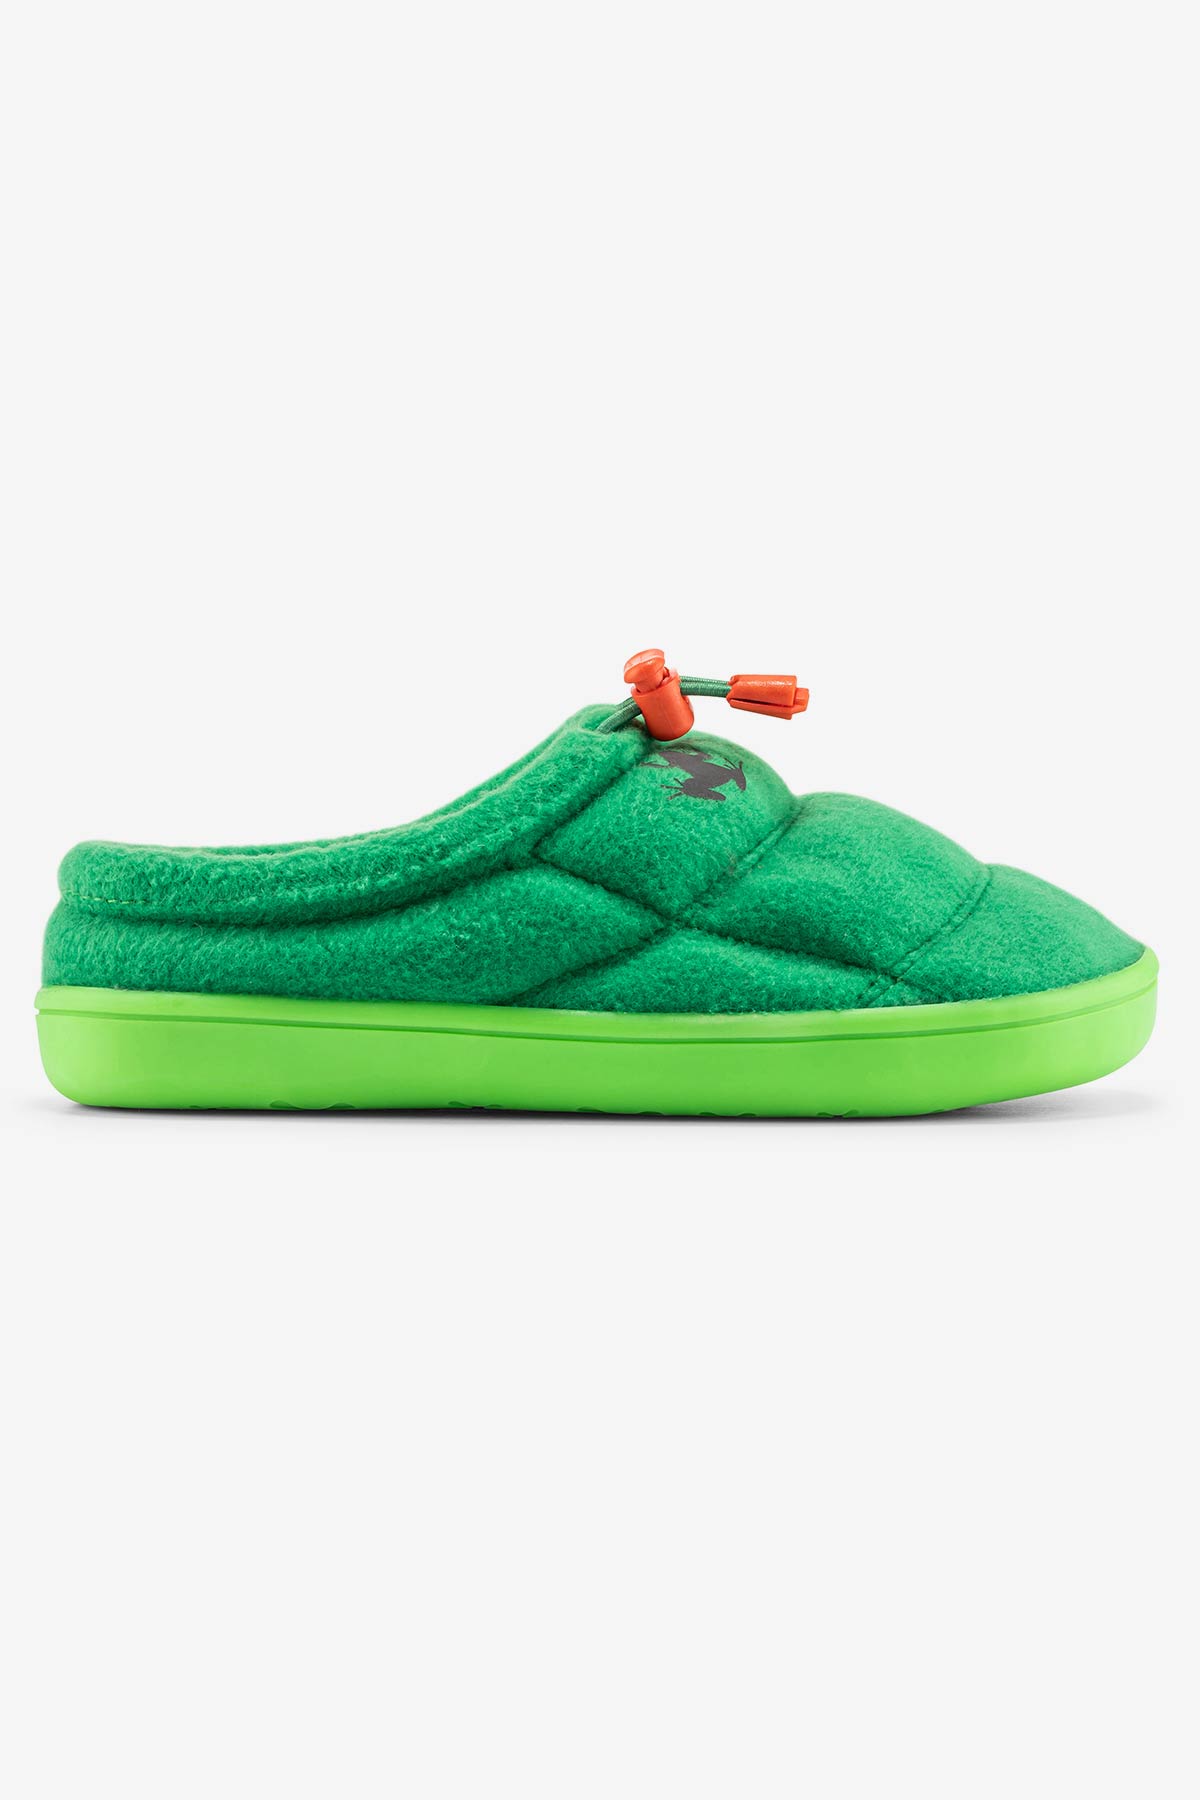 Hoppuff Polar Yeşil Barefoot Çocuk Ayakkabı - Hopfrög Kids